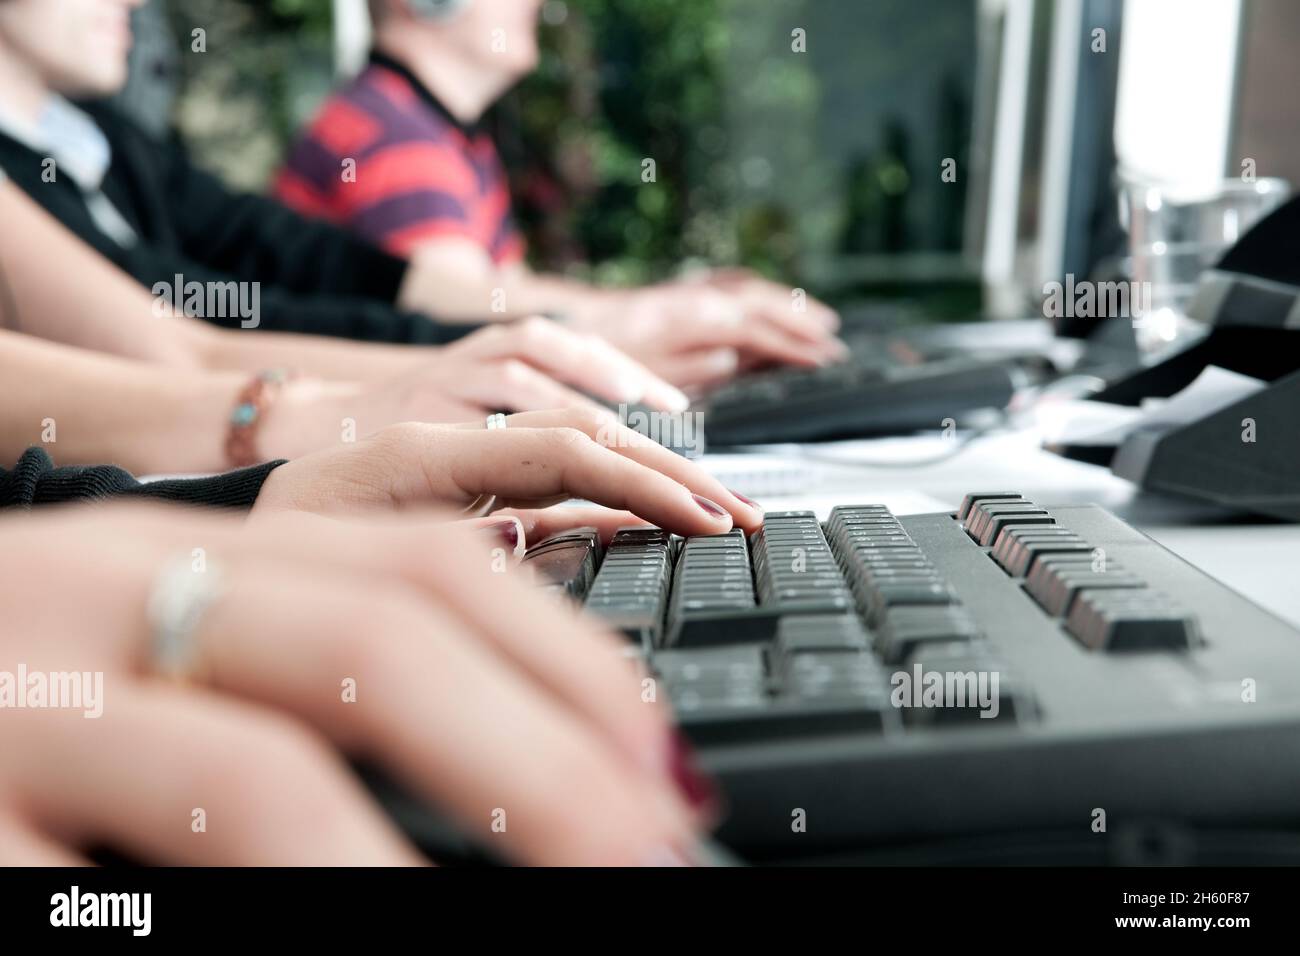 Ein Callcenter in Deutschland im Vordergrund Hände auf Tastaturen. Personen sind nicht zu erkennen. Stock Photo